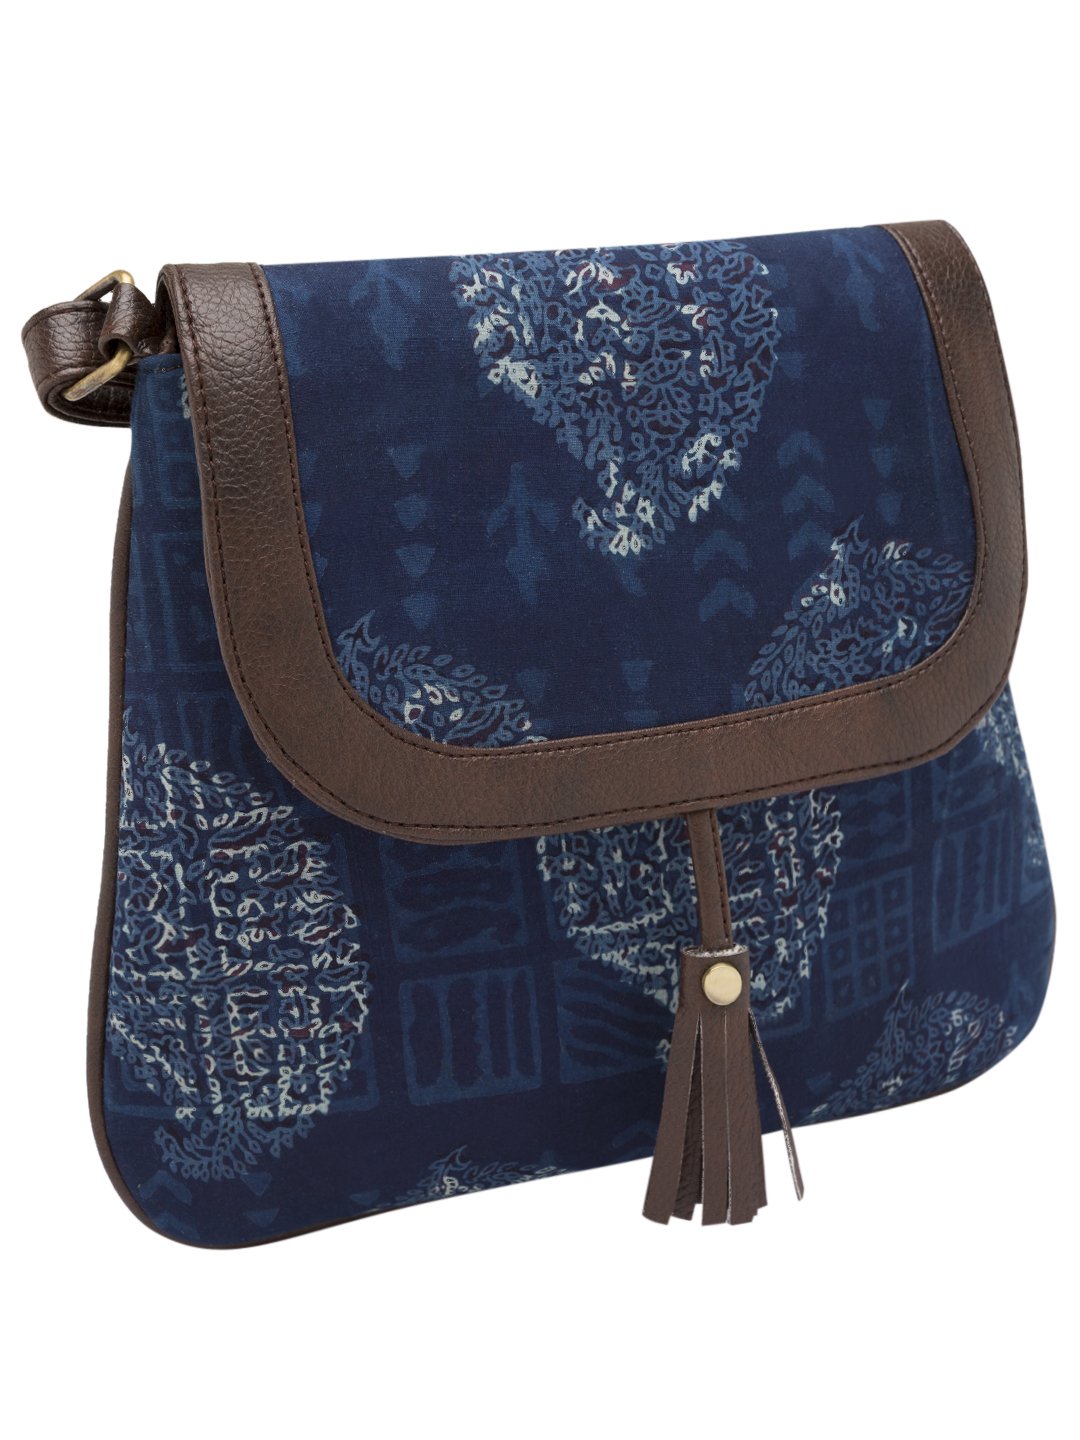 Vivinkaa Women's Sling Bag (Blue) -  Women's Sling Bags in Sri Lanka from Arcade Online Shopping - Just Rs. 5178!